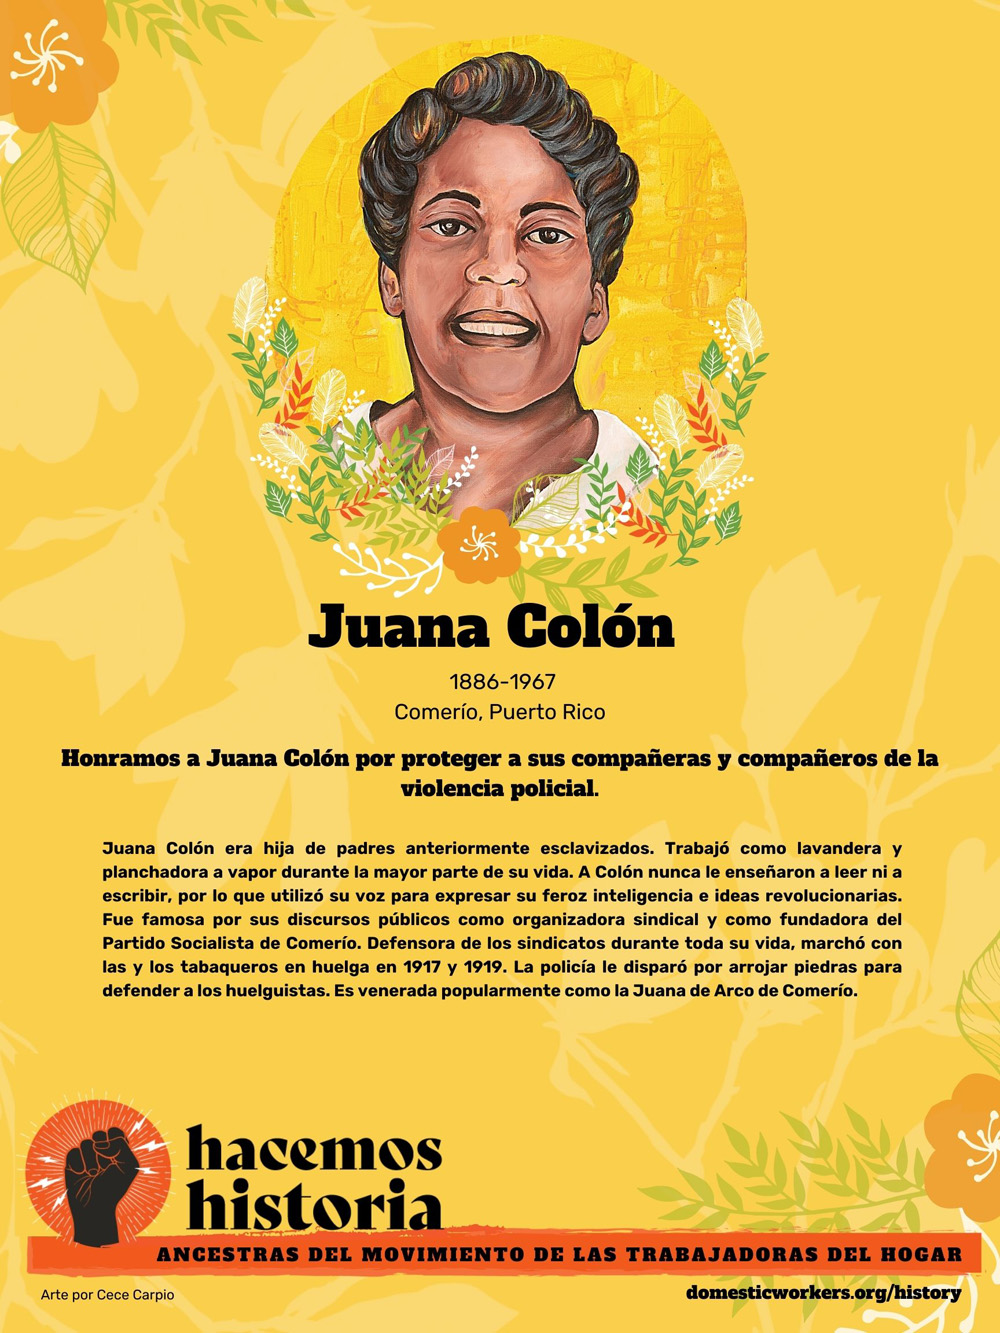 Retratos de las ancestras del movimiento de trabajadoras de hogar: Juana Colon